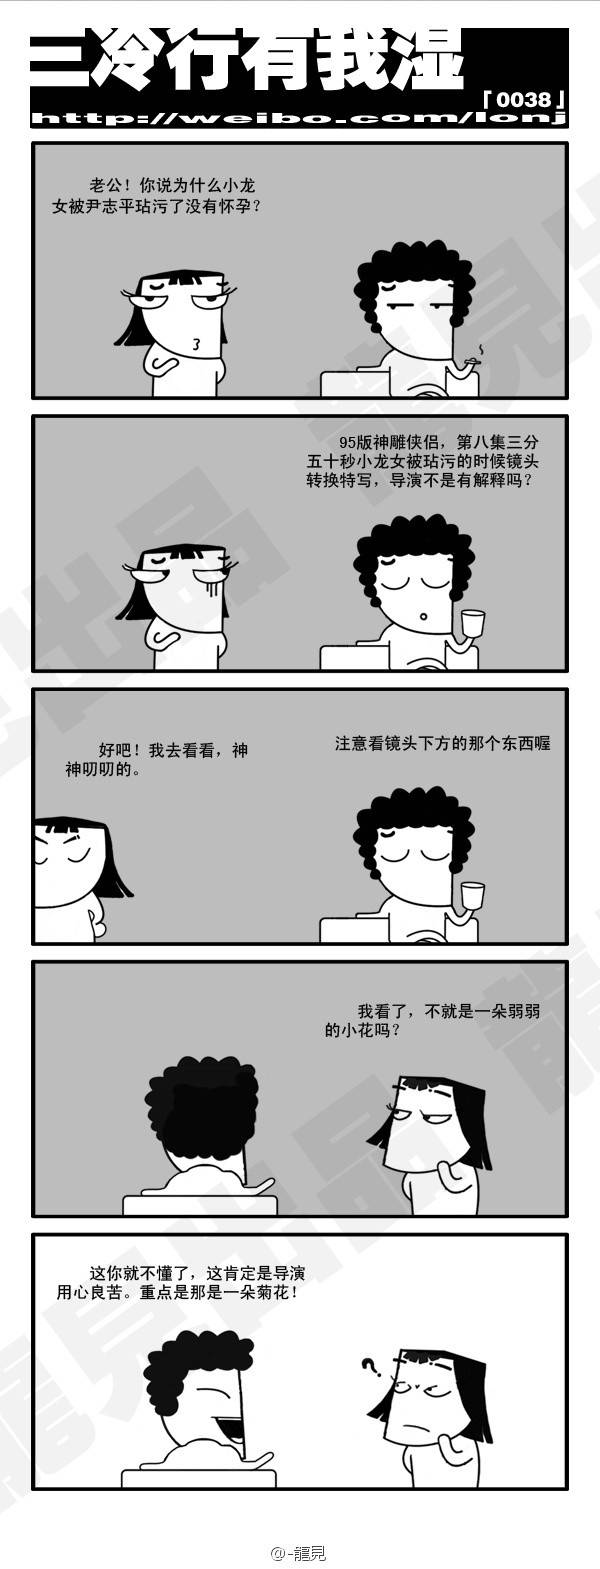 邪恶漫画爆笑囧图第317刊：不好意思咯